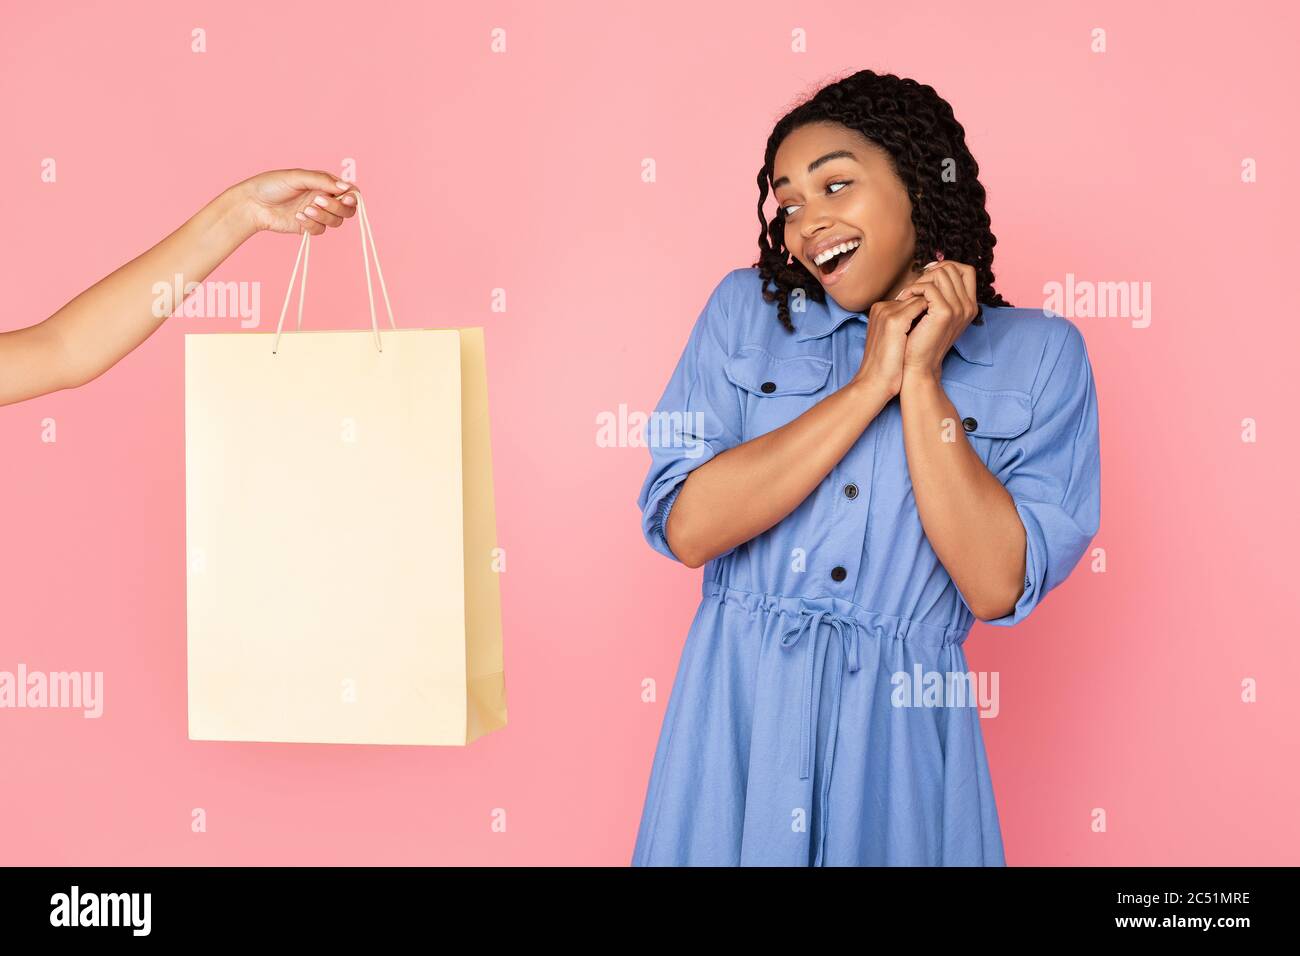 Mano che offre la borsa della spesa a Shopaholic Girl su sfondo rosa Foto Stock